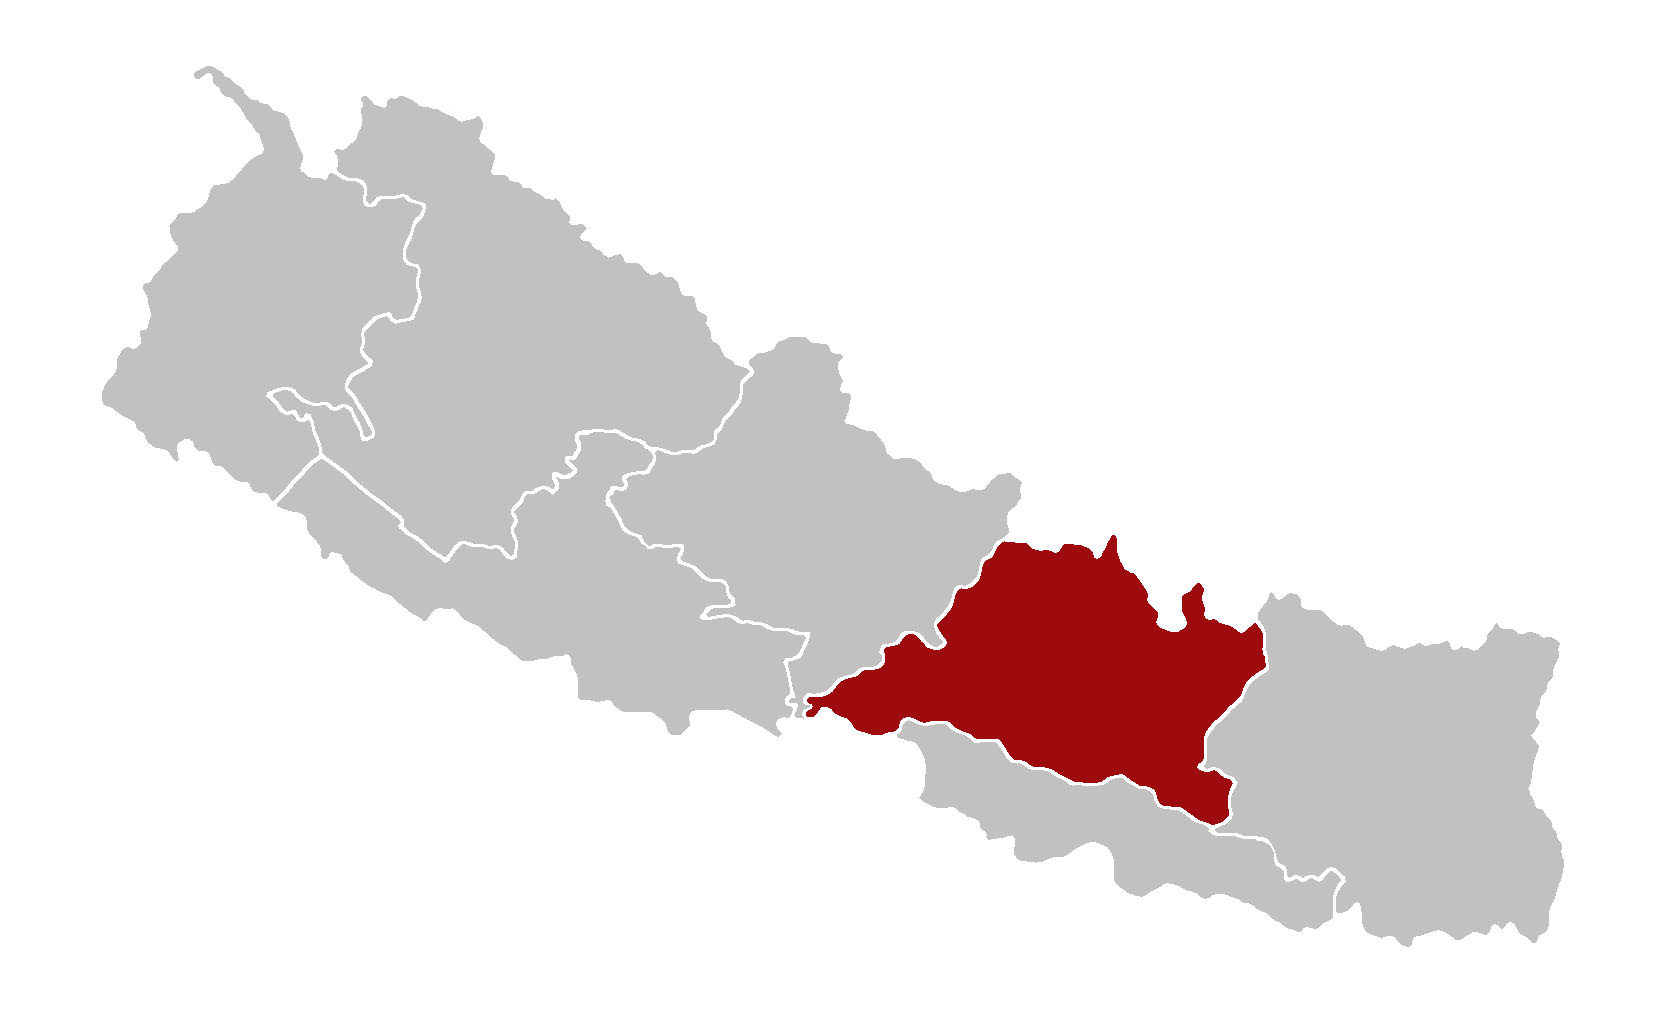 Bagmati Pradesh map of Nepal.